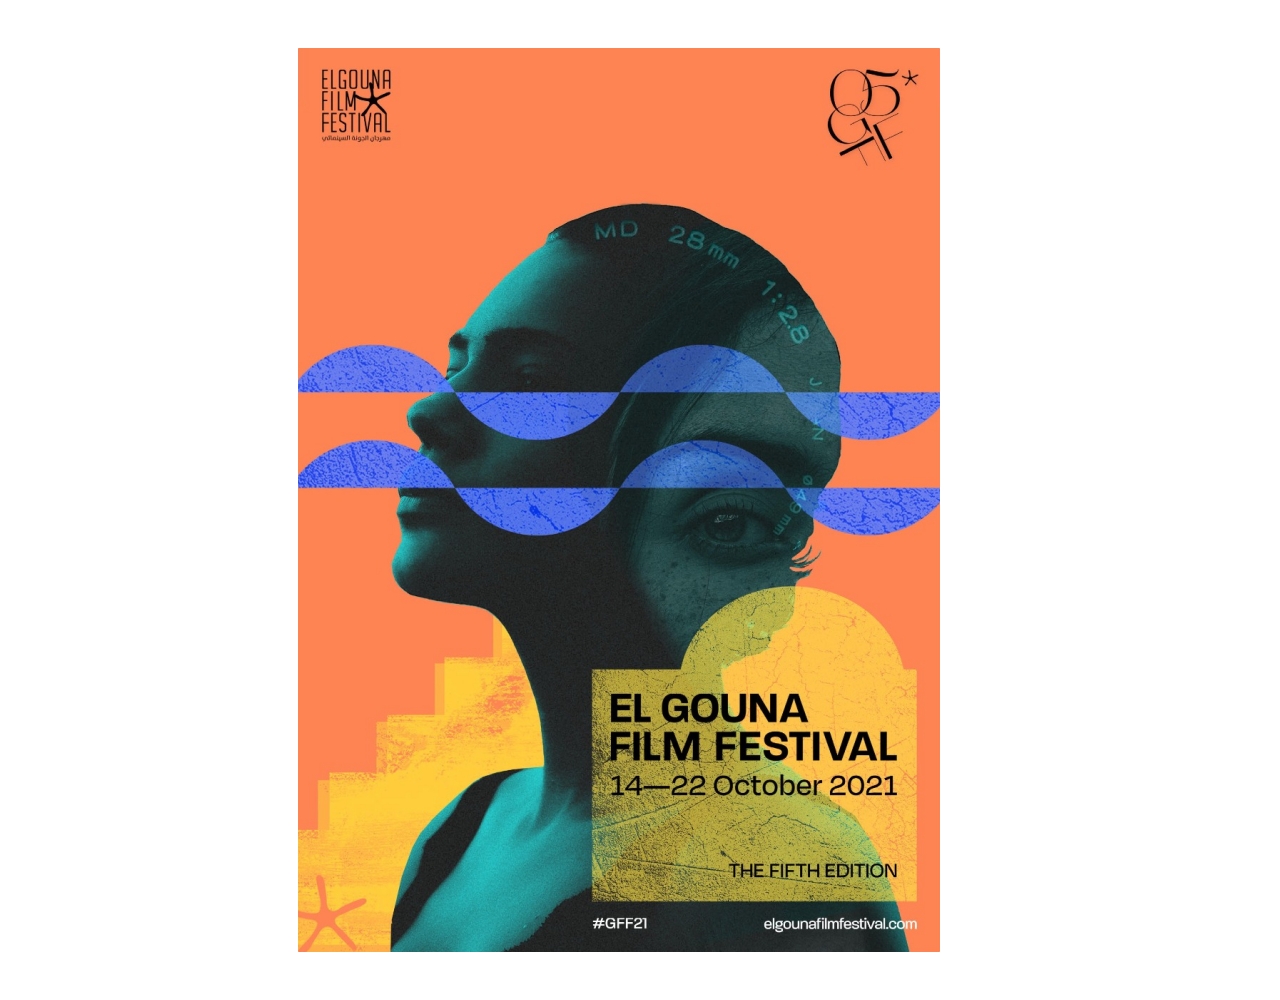 أويما 20 - Uima20 | مهرجان الجونة السينمائي يكشف عن بوستر دورته الخامسة